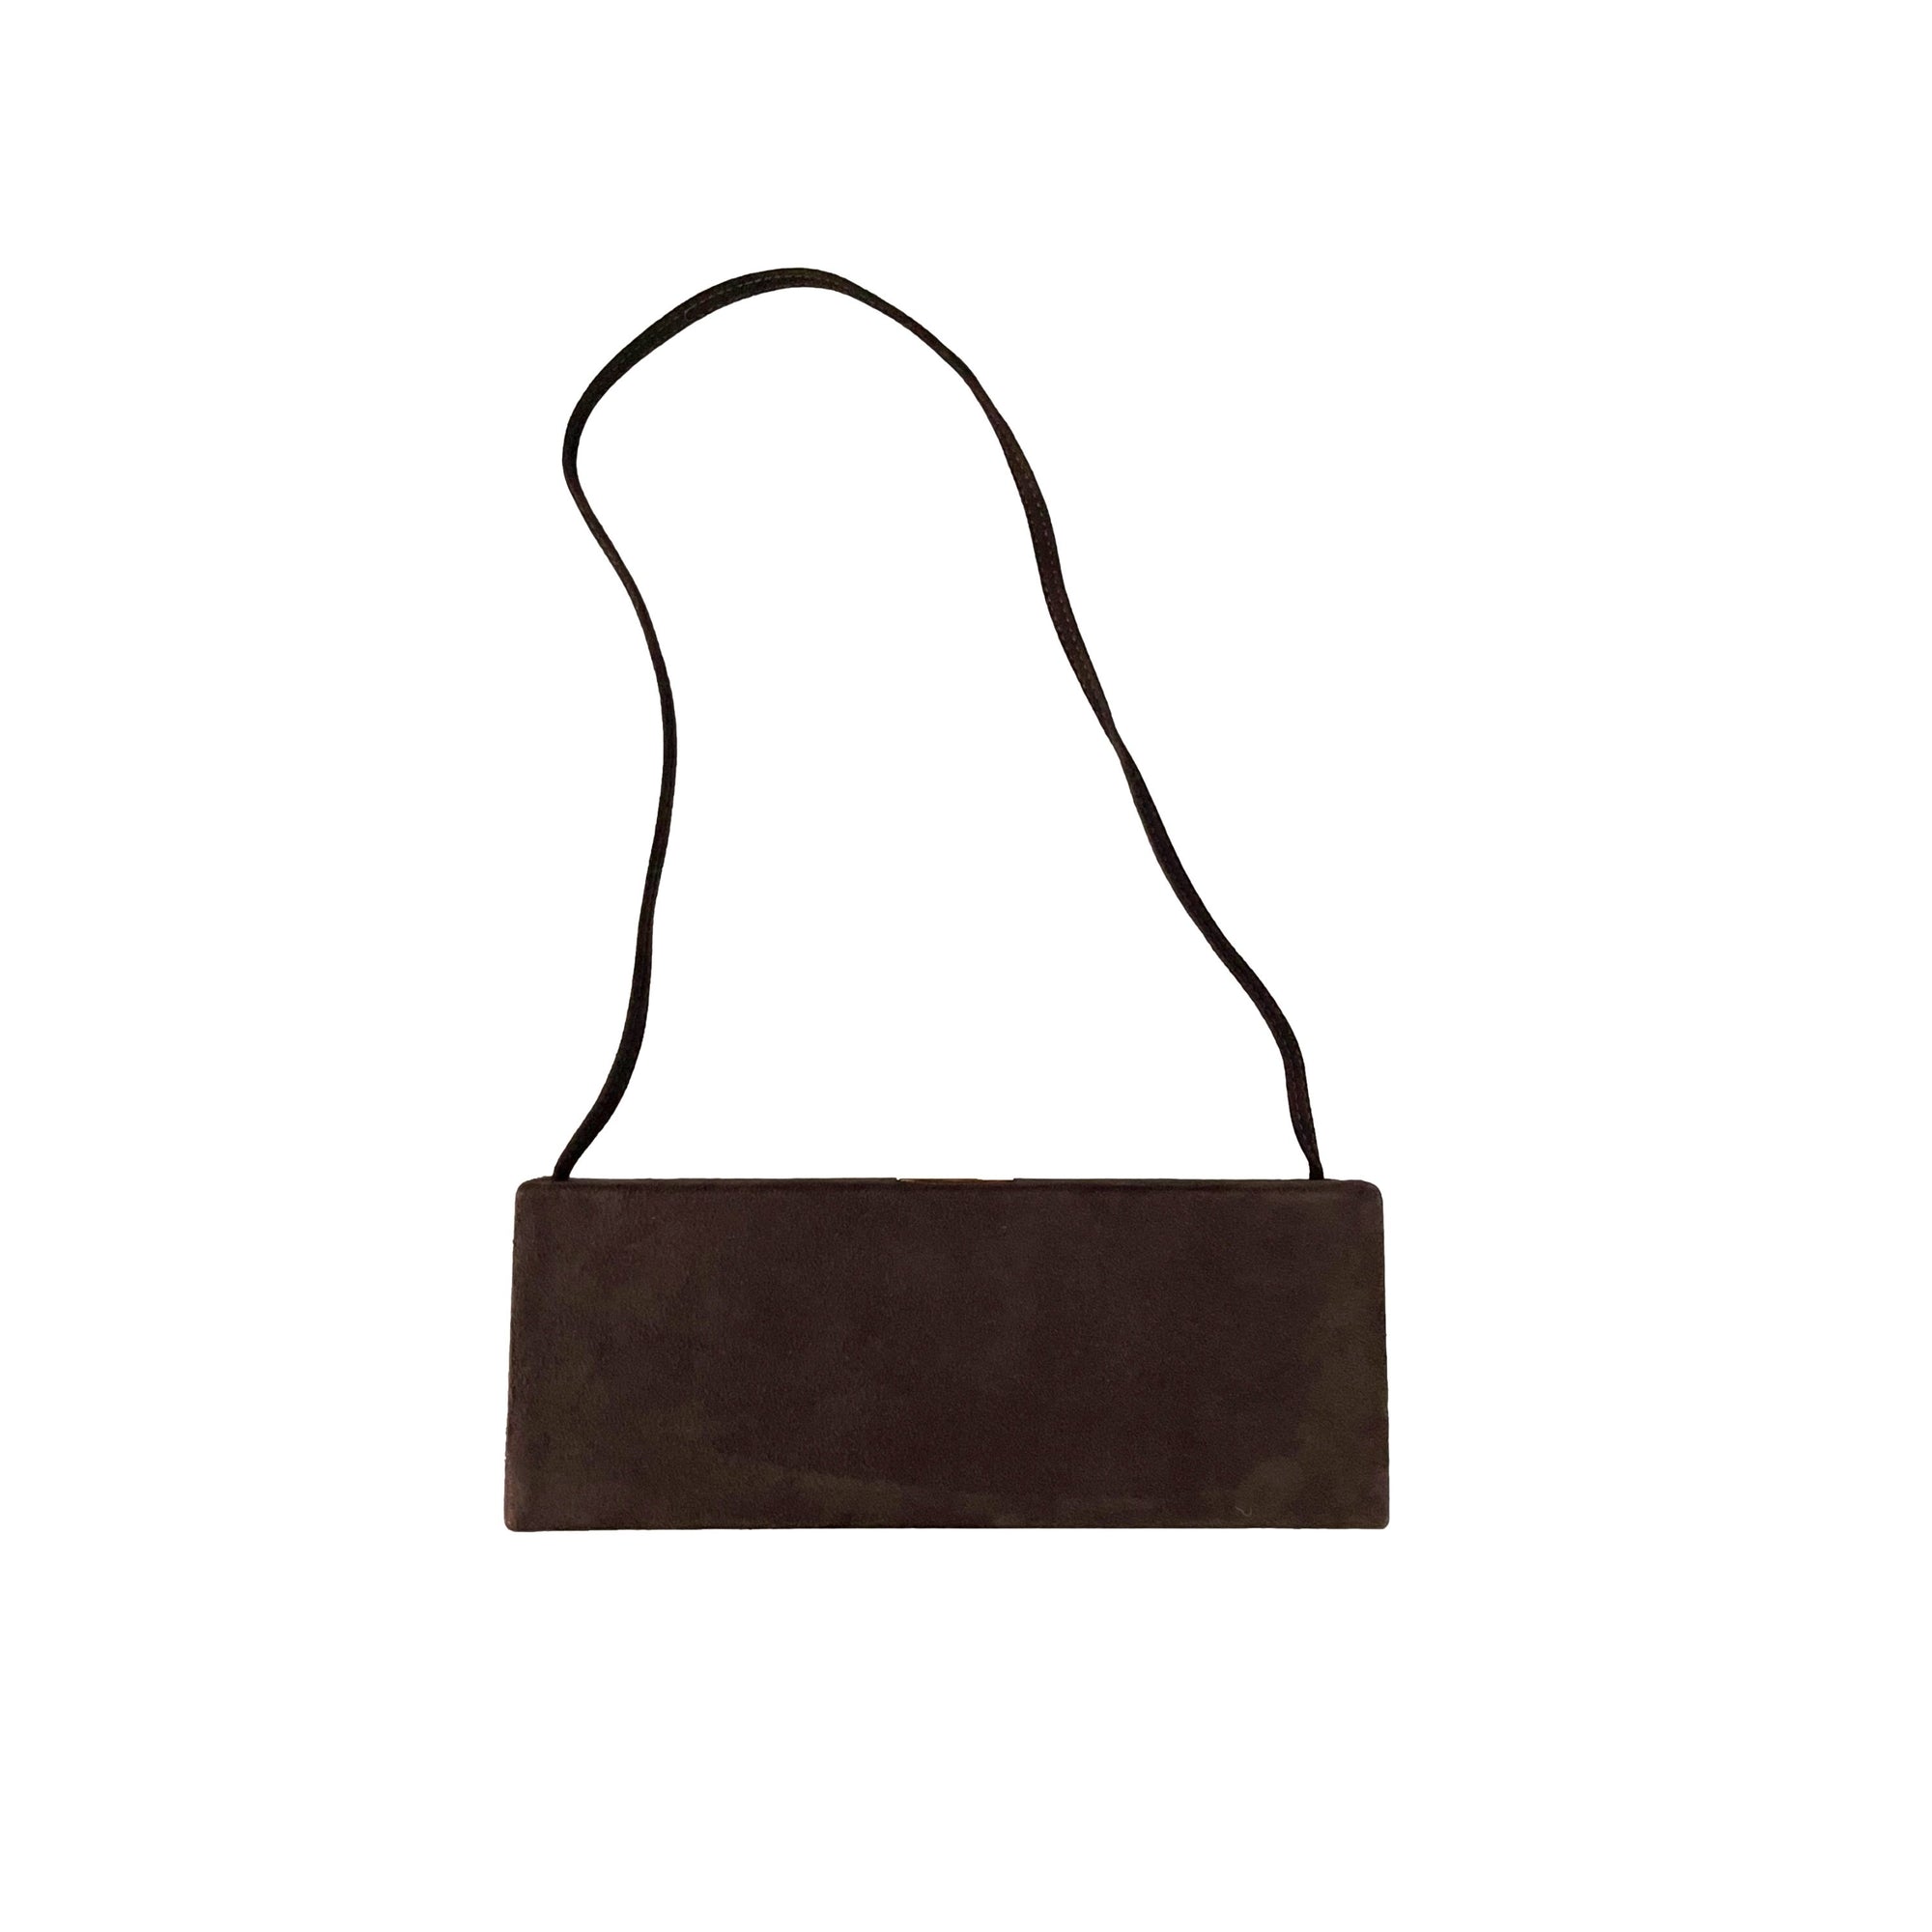 Celine Brown Suede Micro Box Bag - Handbags